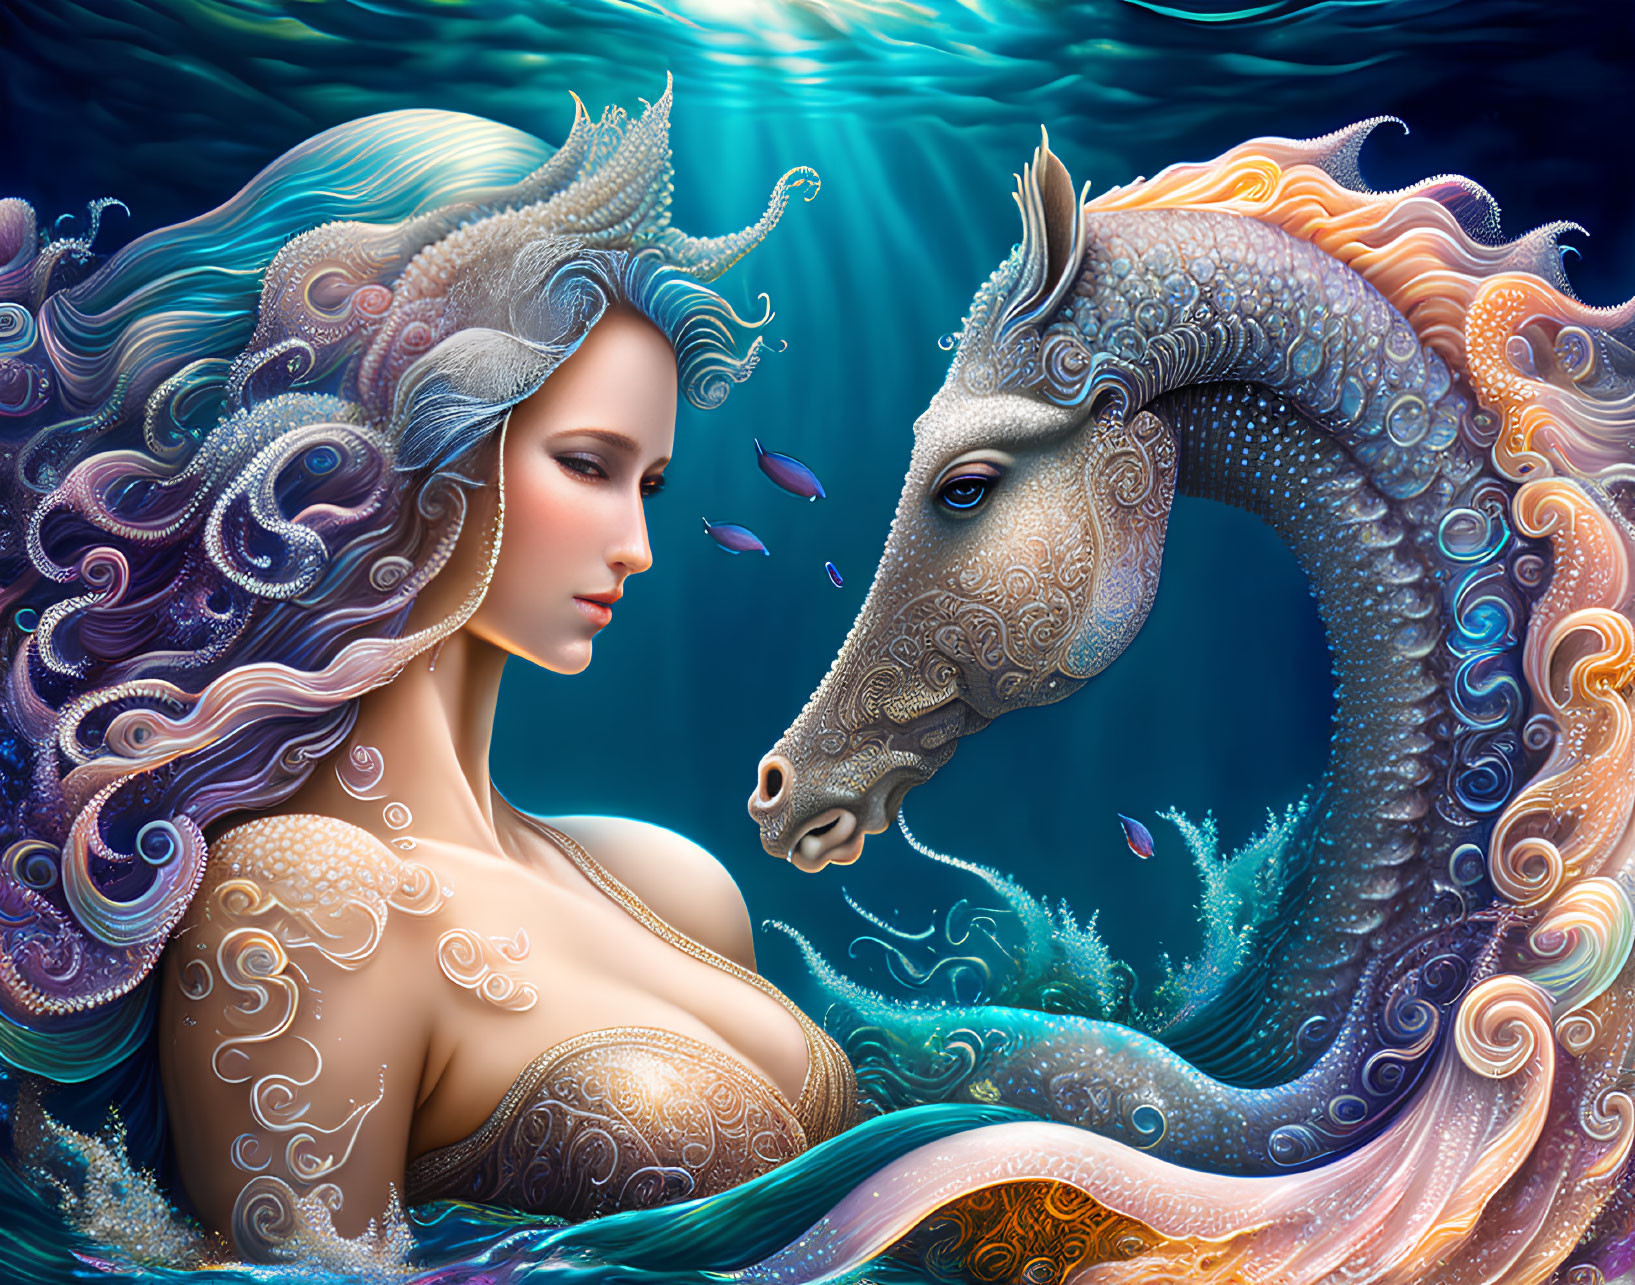 Mystical mermaid and seahorse in underwater scene